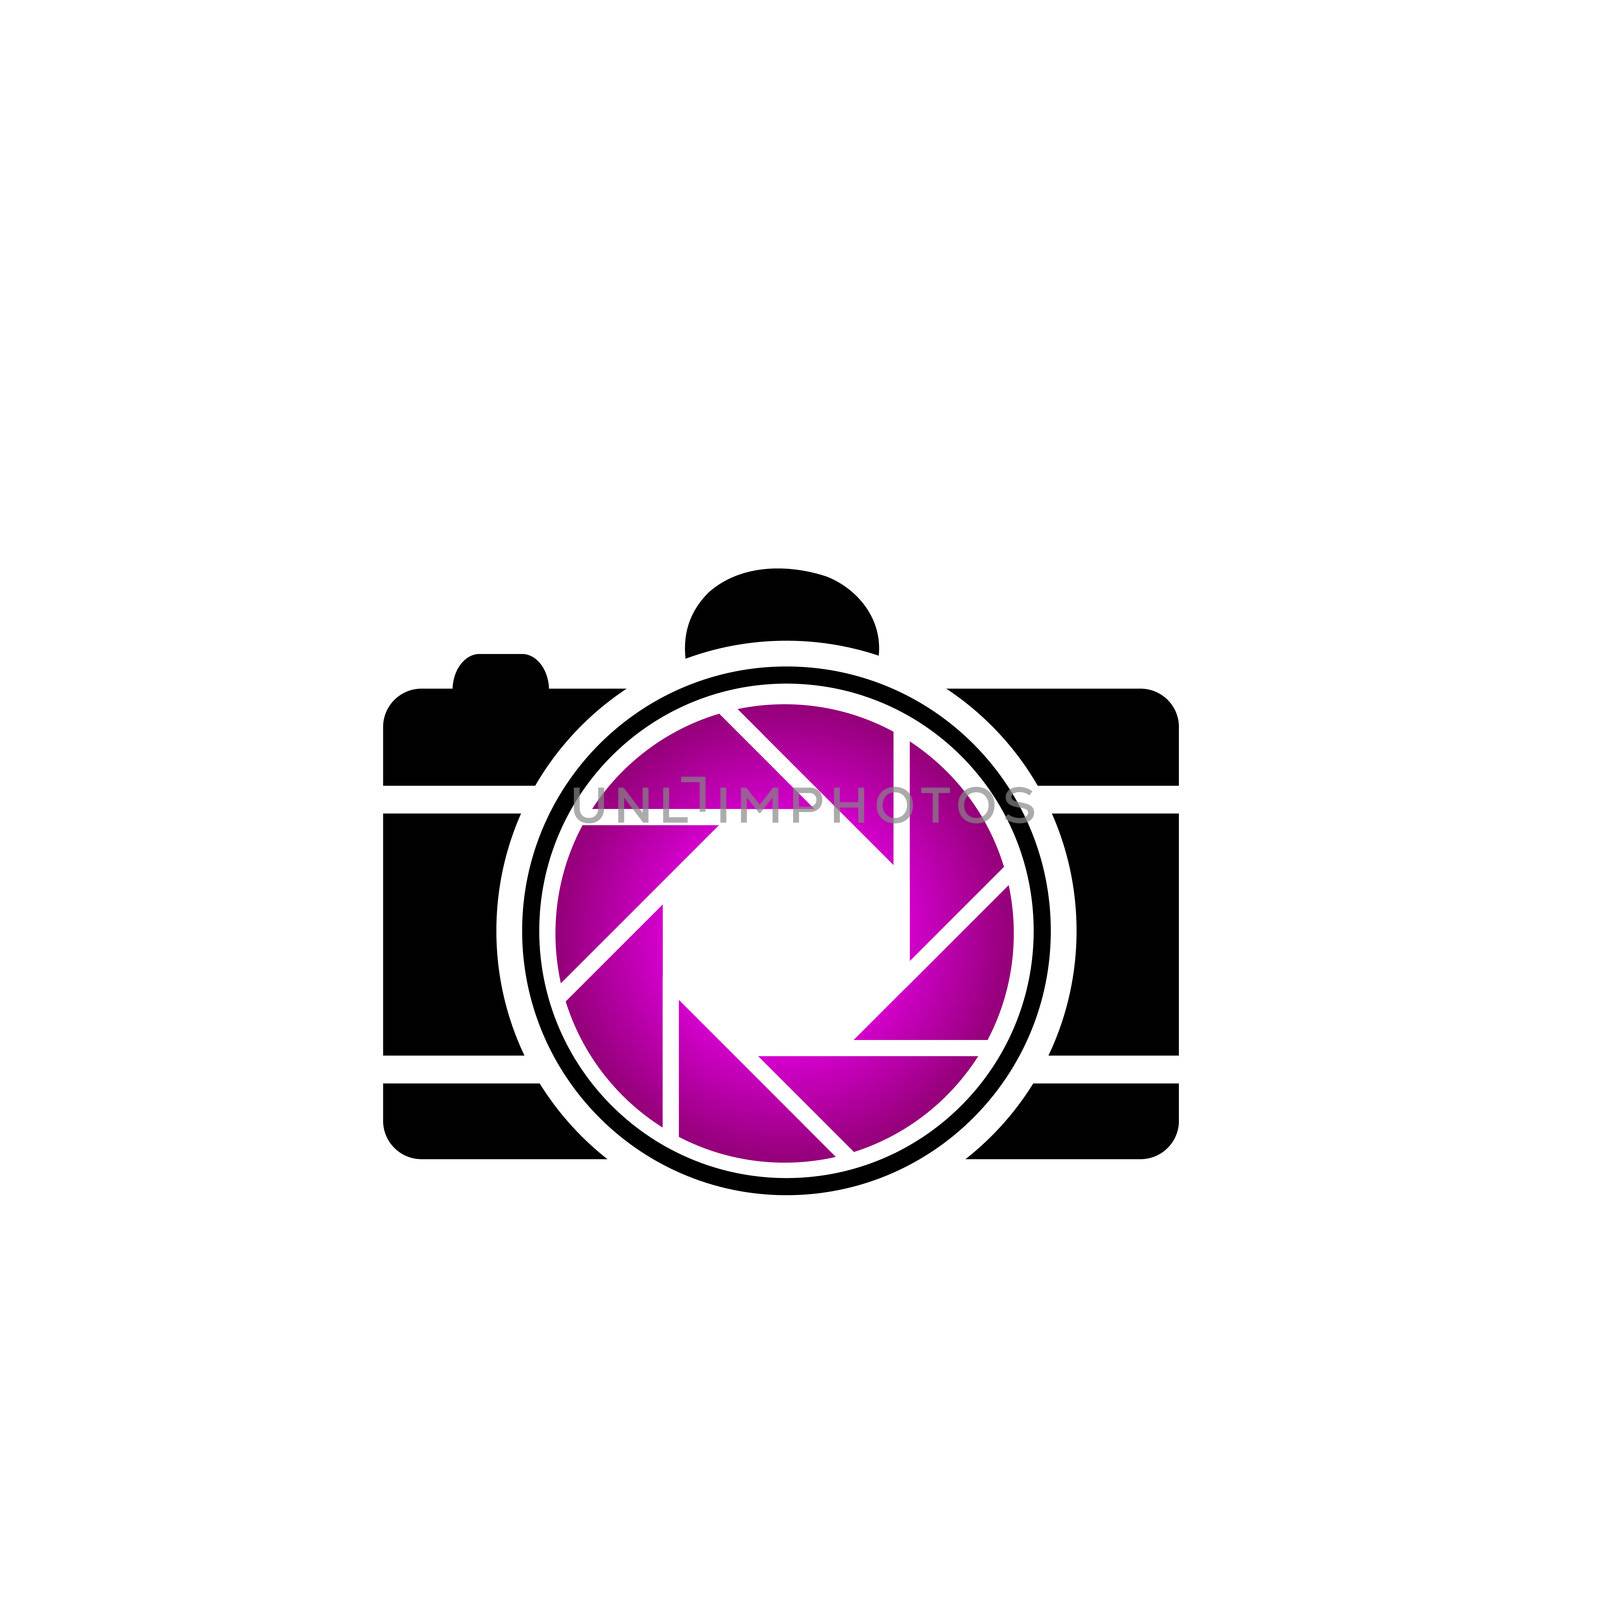 Snapshot logo by shawlinmohd